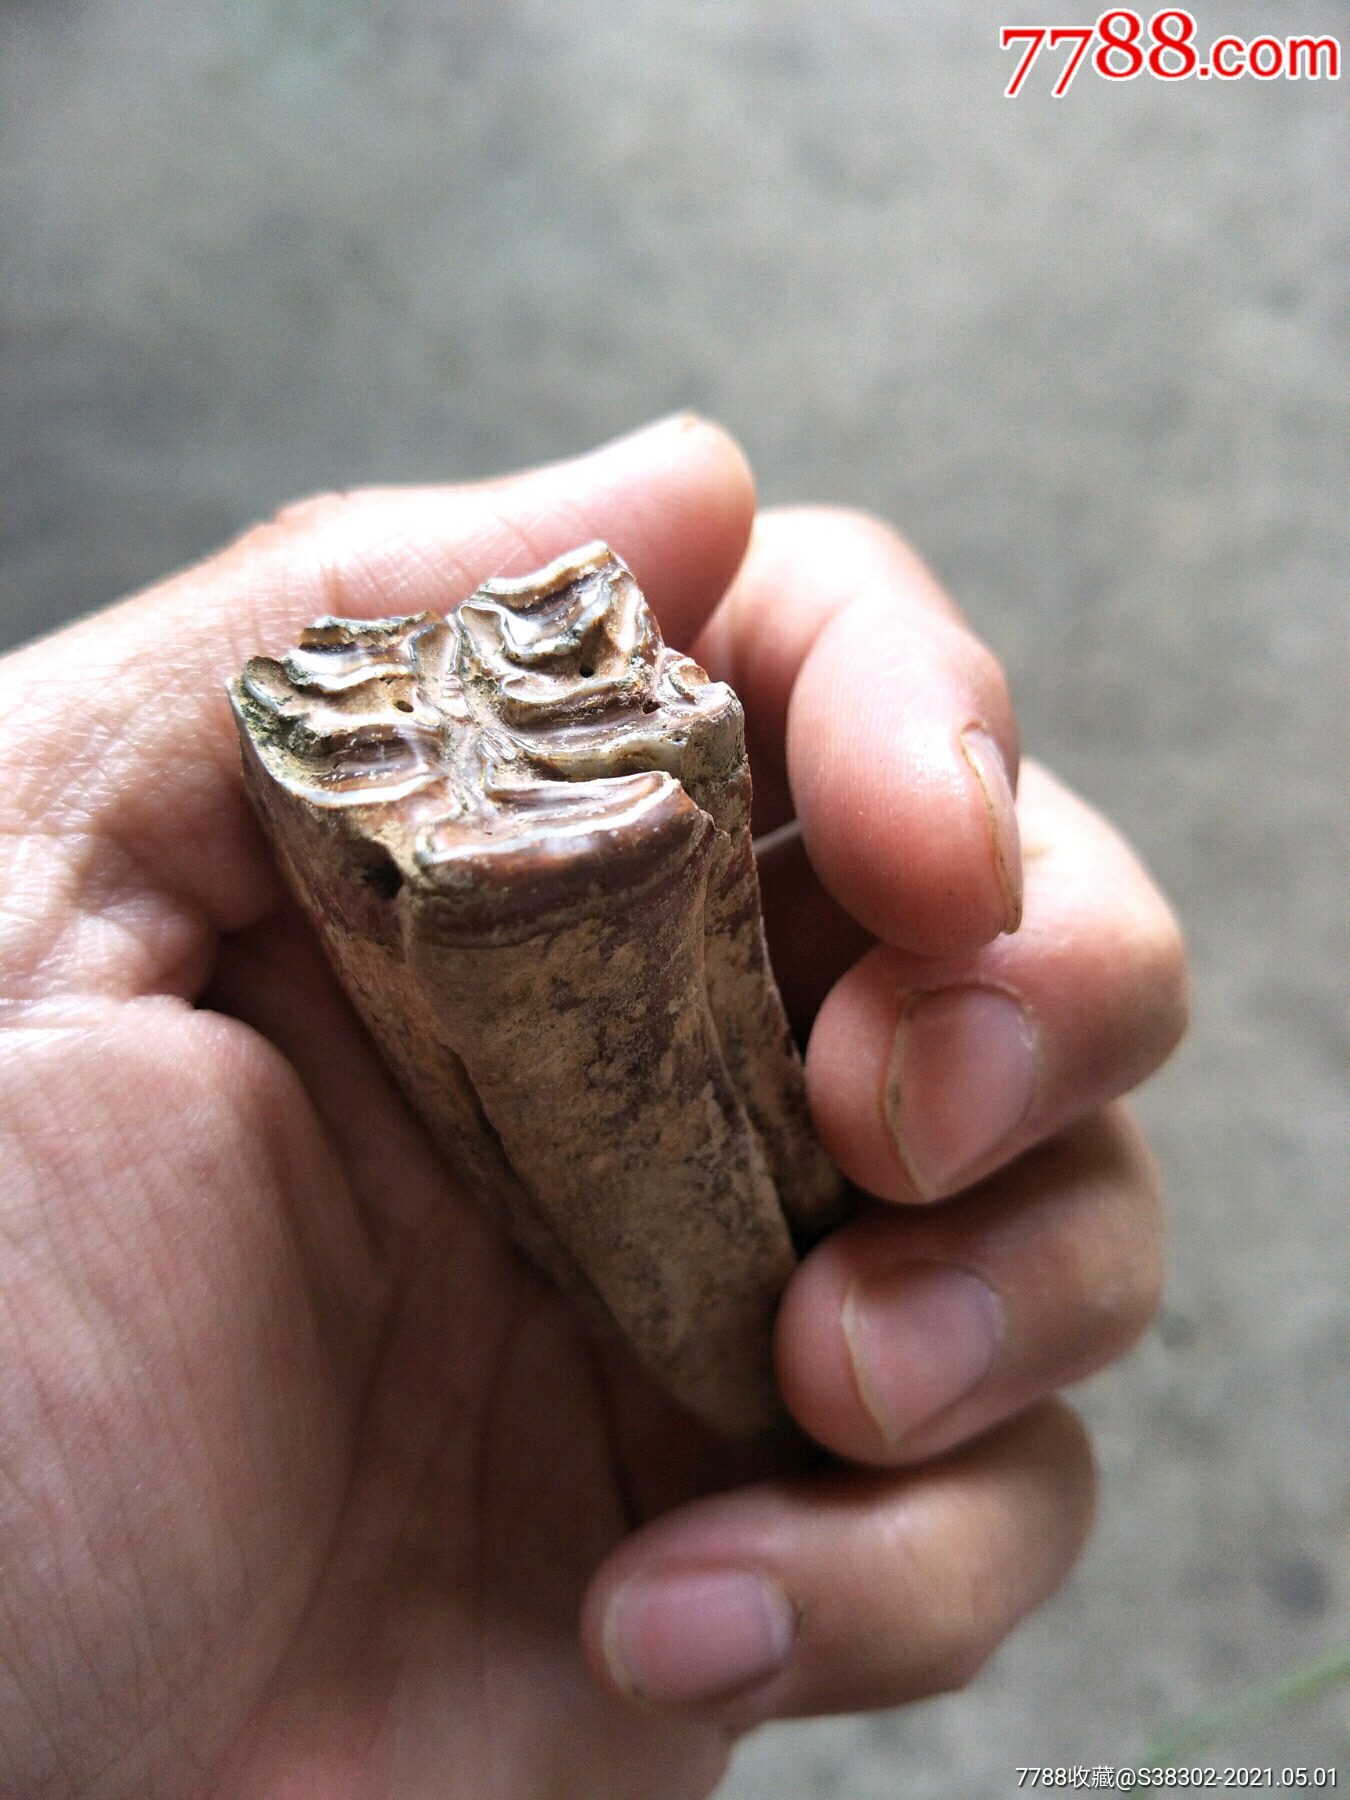 完整的马牙齿化石图片图片